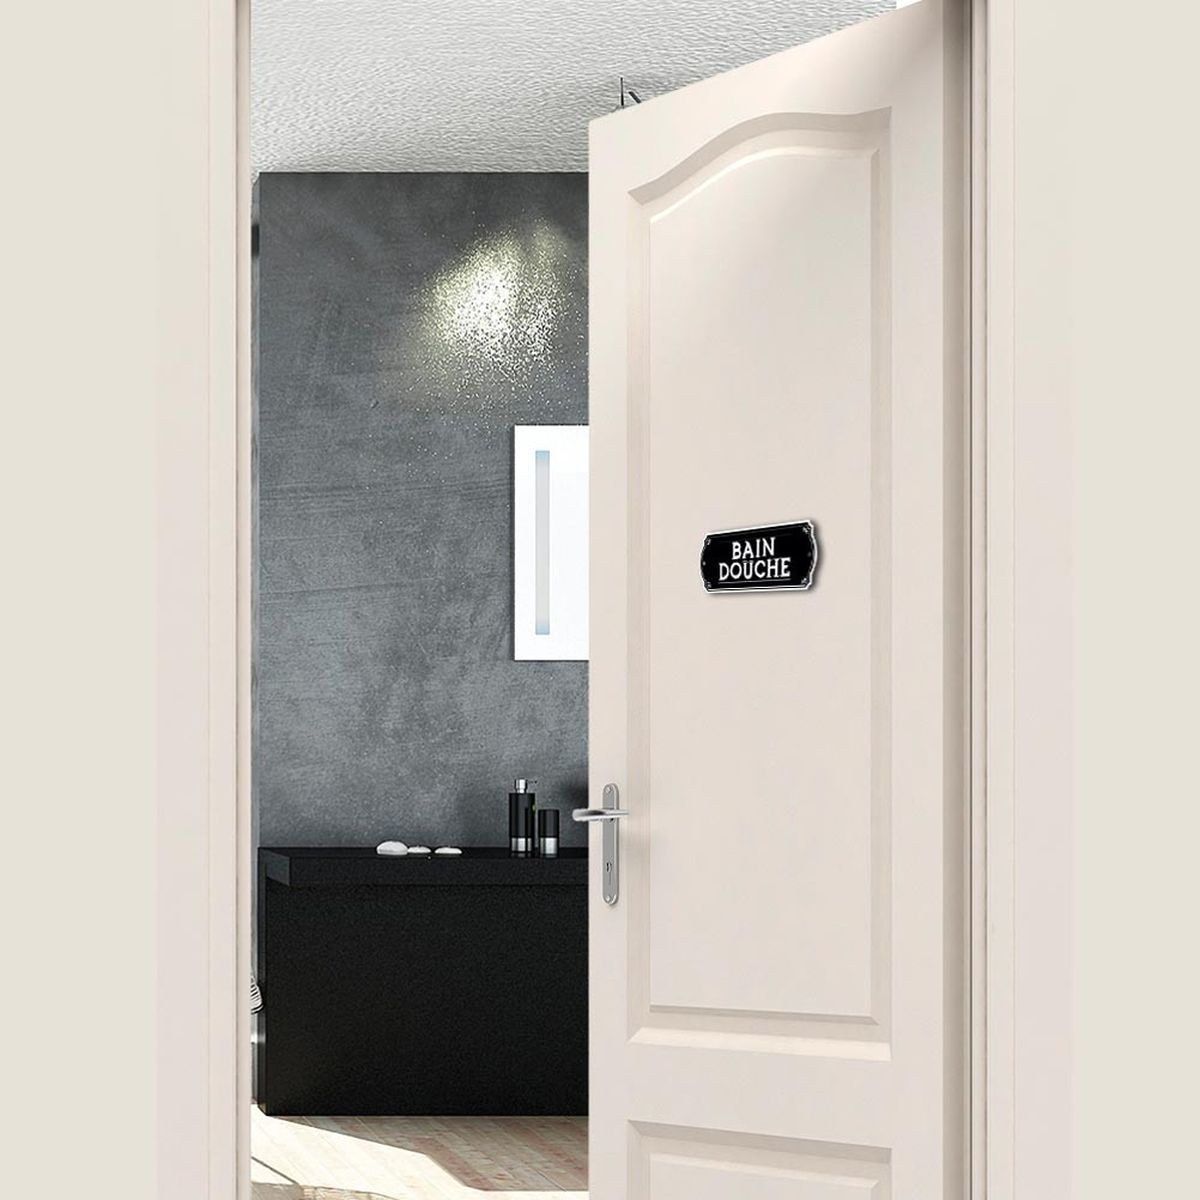 Embossed bath shower door plate